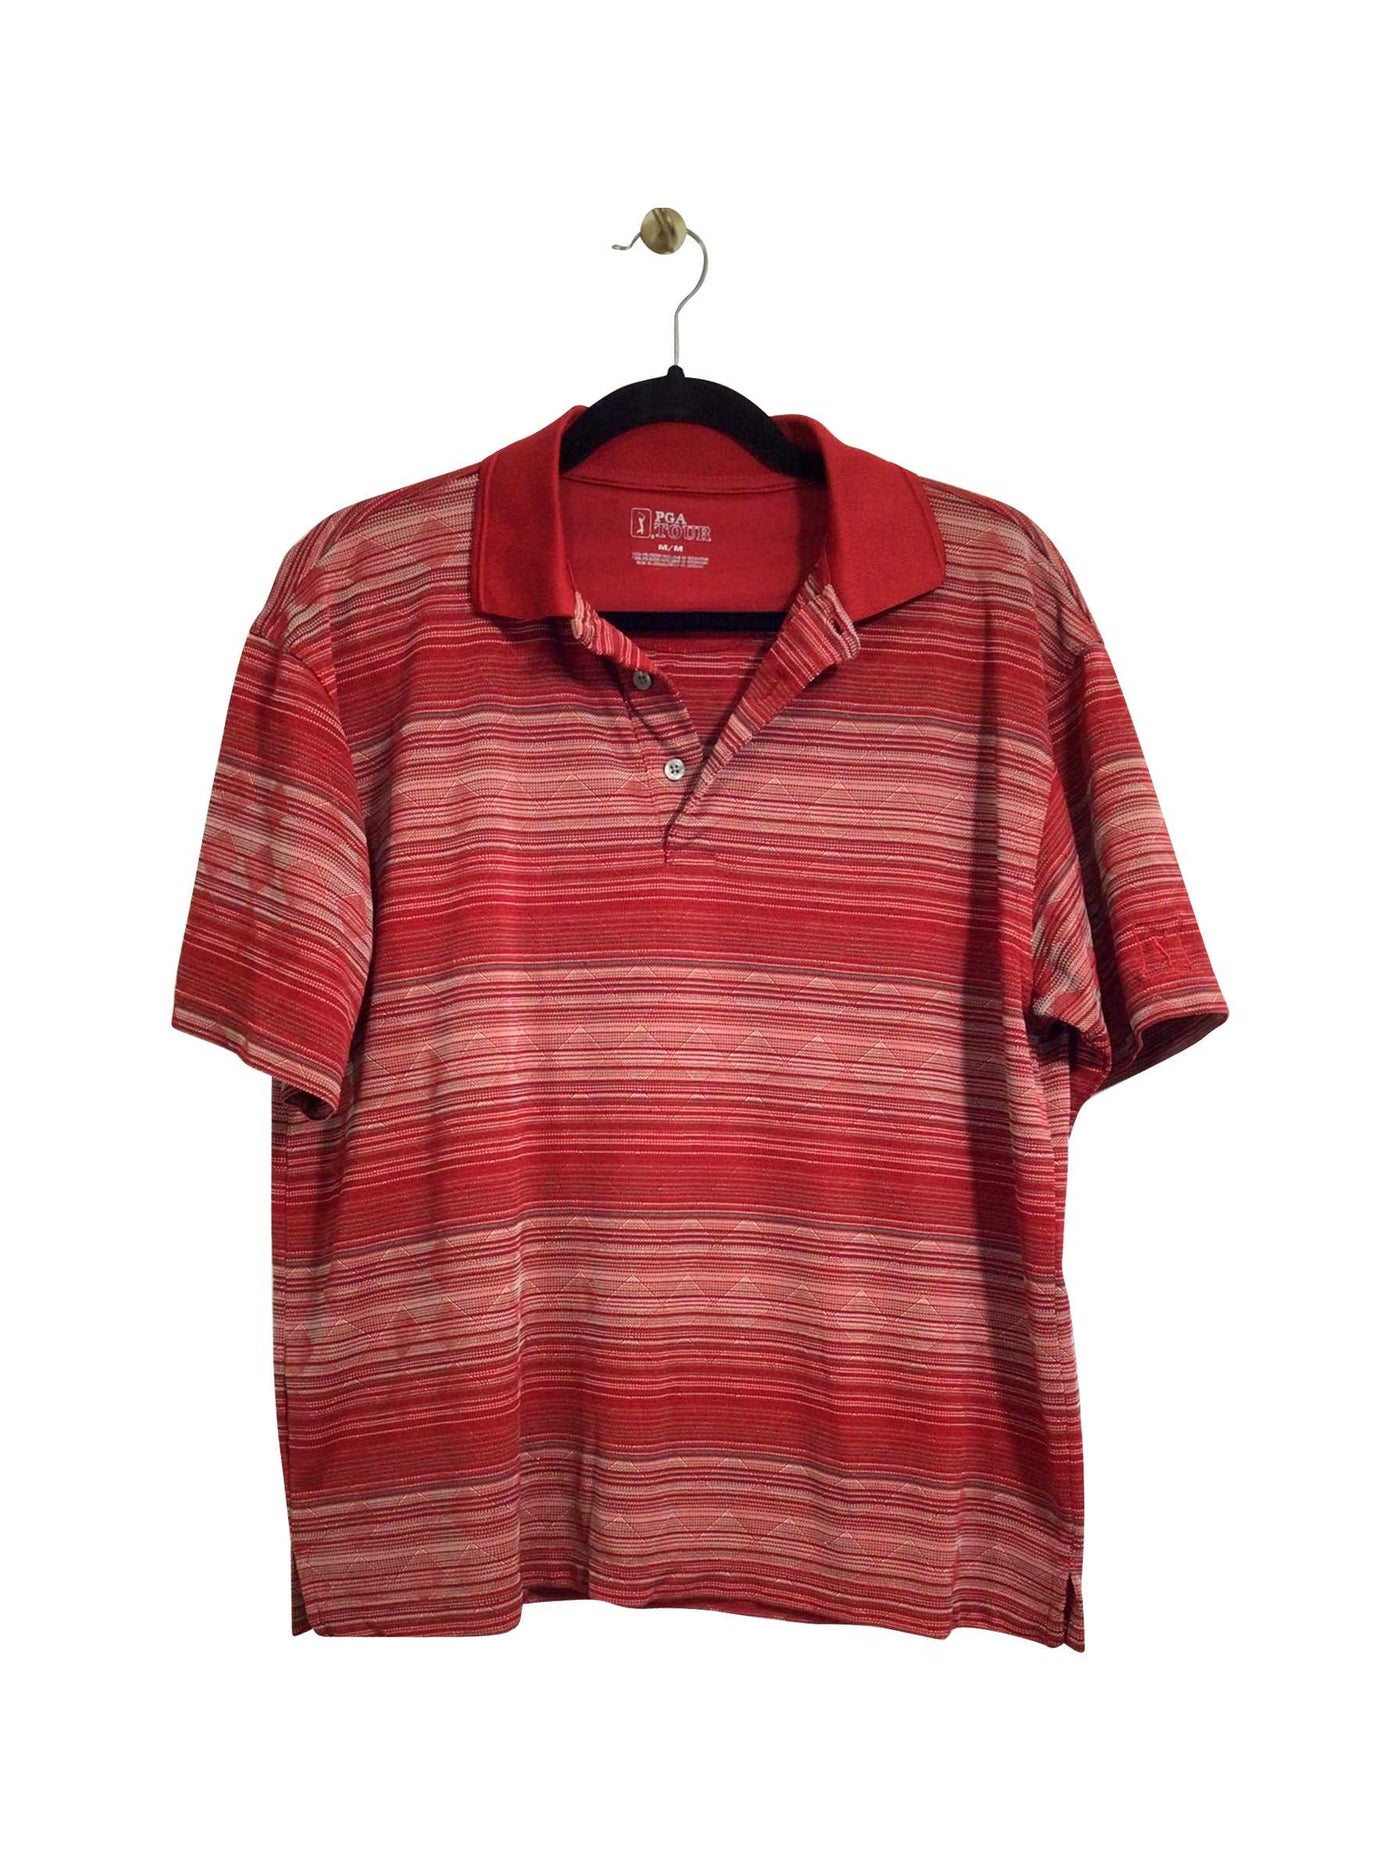 PGA TOUR Regular fit T-shirt in Red - Size M | 12.99 $ KOOP